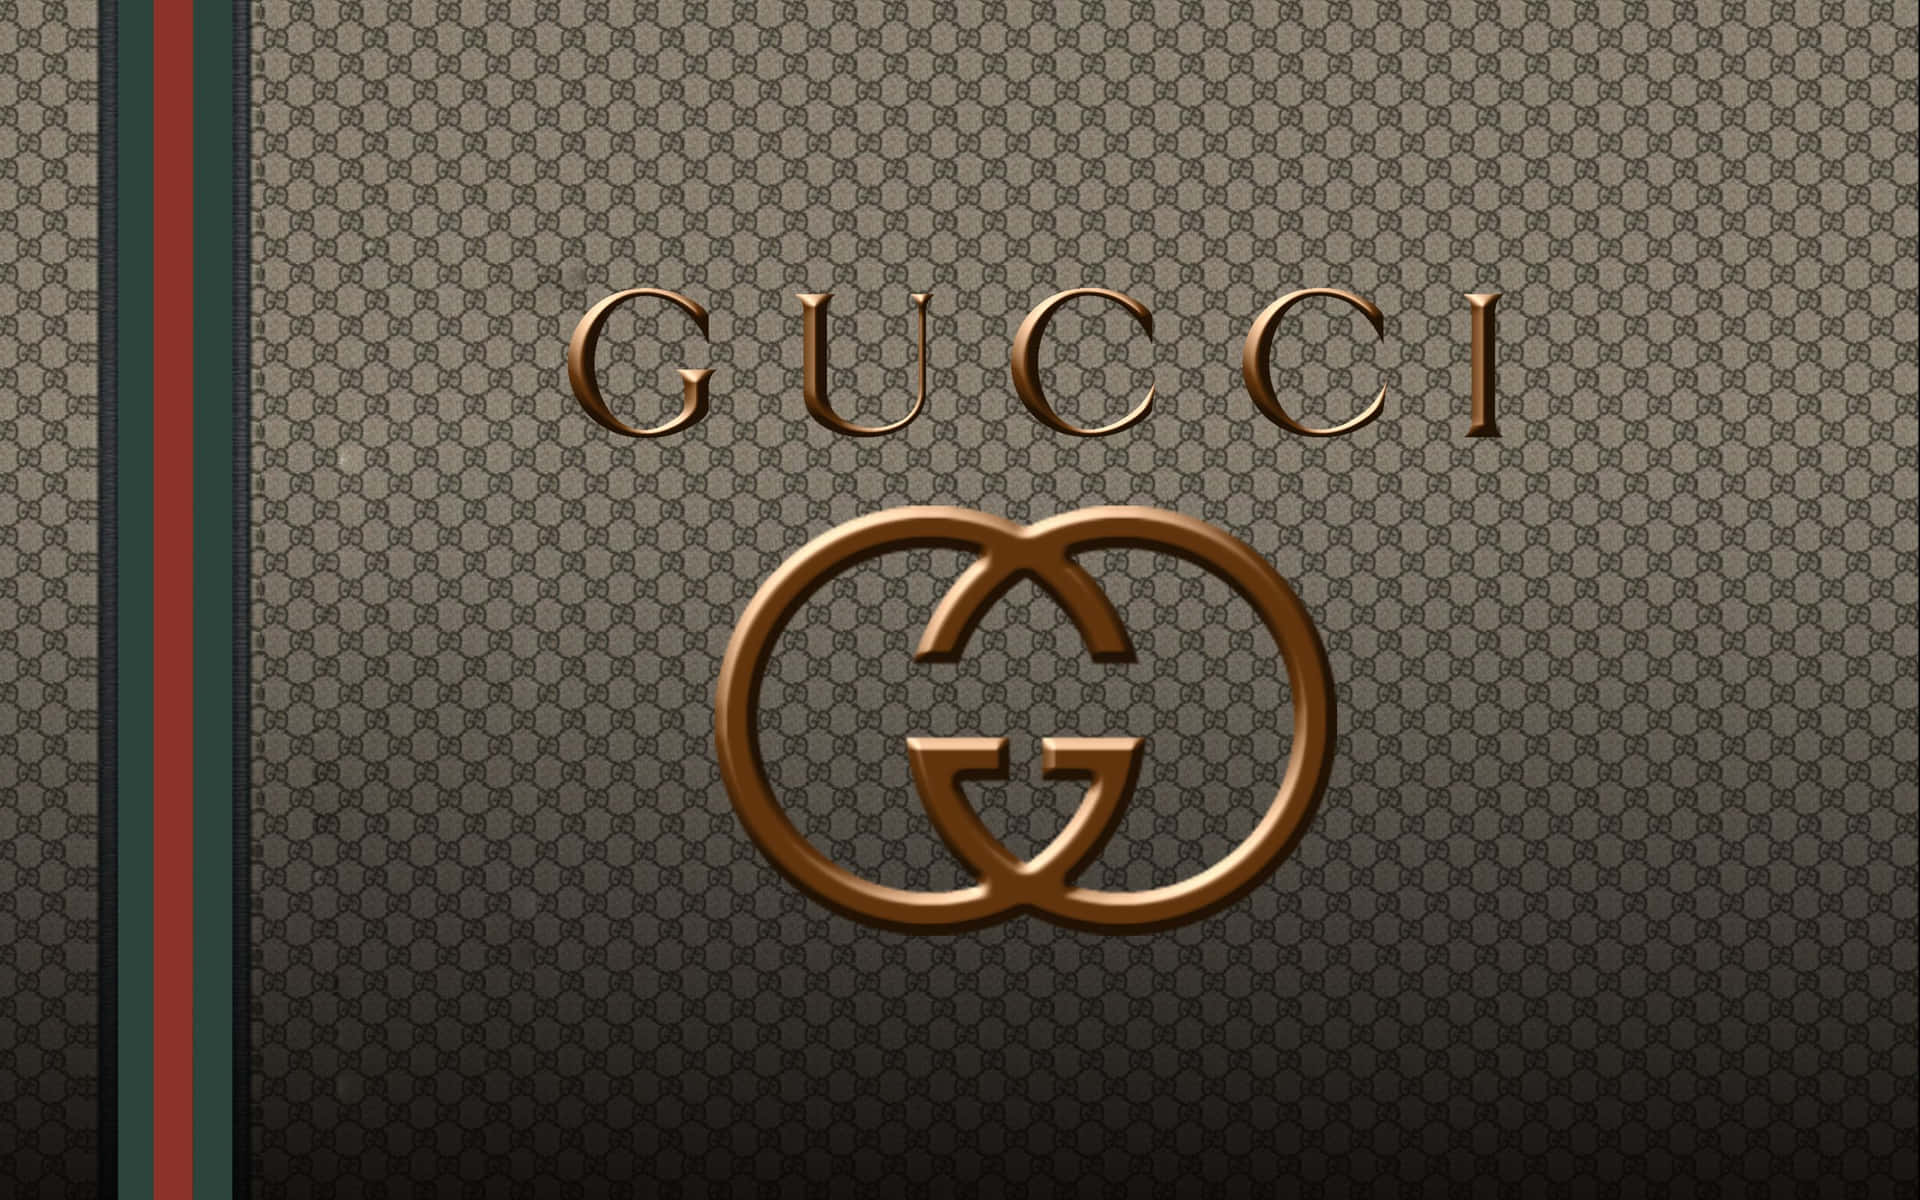 Estilorequintado Do Fundo Da Marca De Moda Gucci